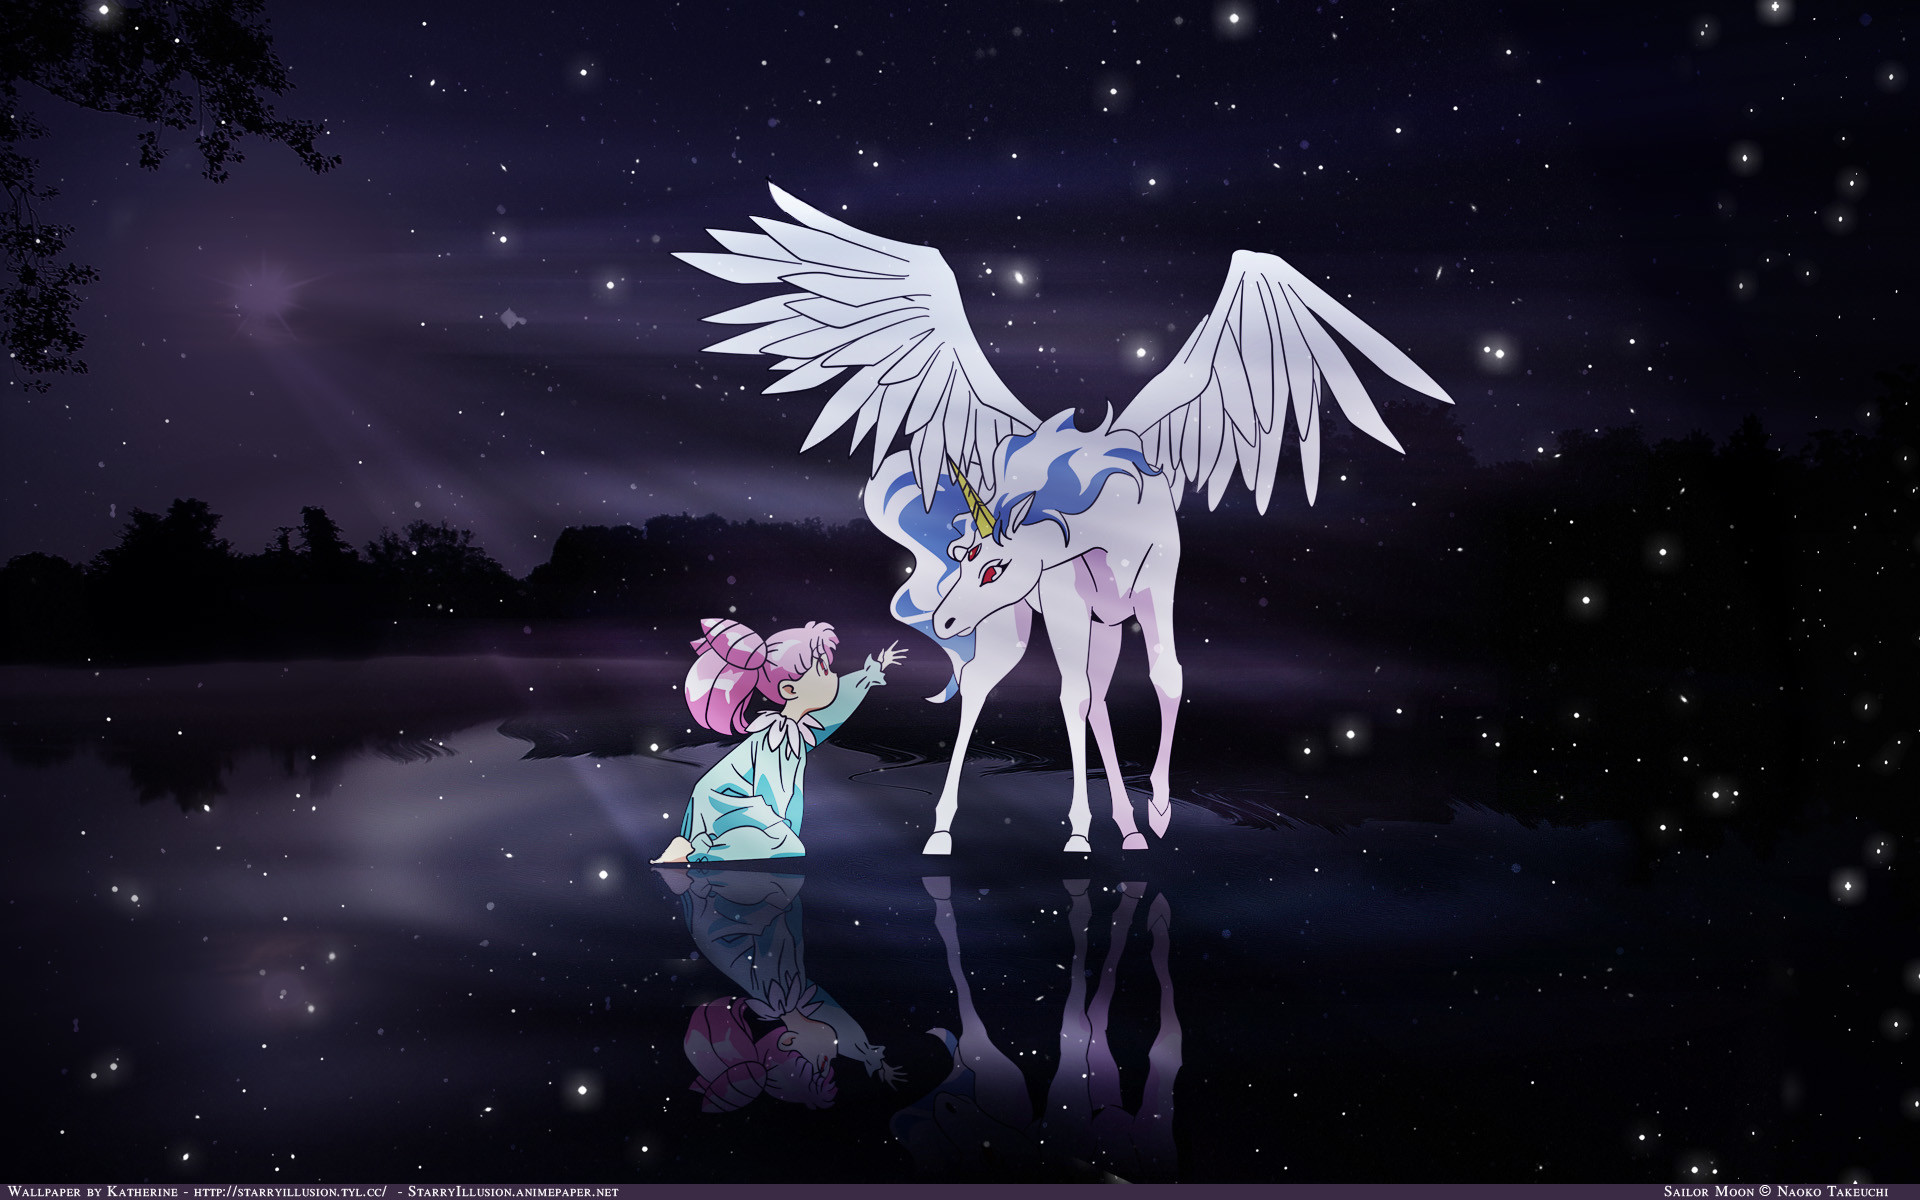 Girly Sailor Moon Wallpapers Cool Images Free High - Sailor Moon Chibiusa And Pegasus - HD Wallpaper 